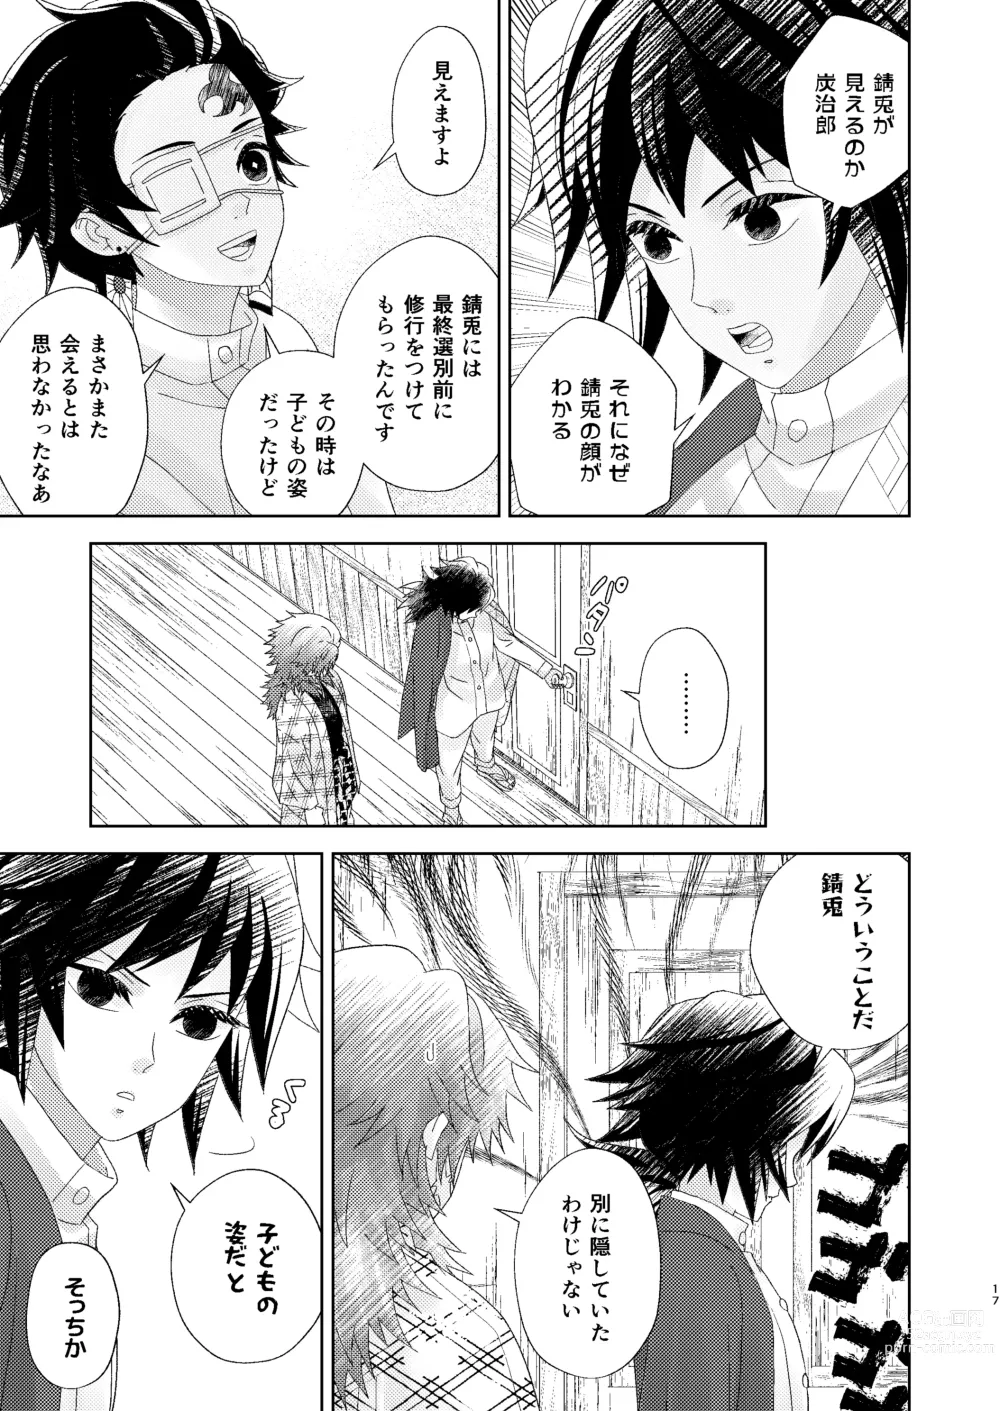 Page 16 of doujinshi Yuurei Kareshi no Koiwazurai